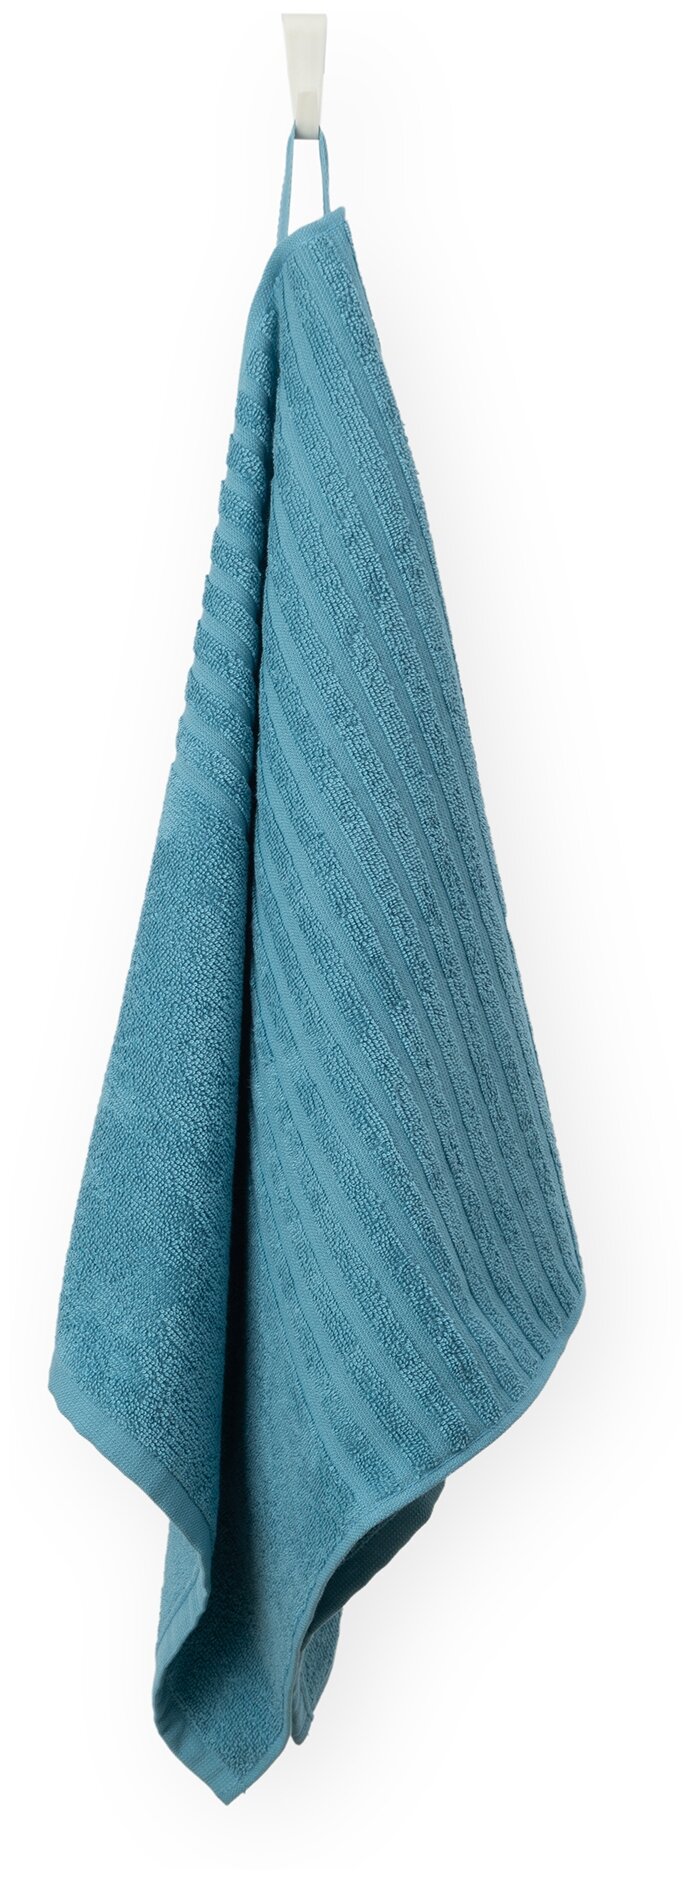 Полотенце махровое для лица и рук, Донецкая мануфактура, 50Х100 см, цвет: серо-голубой, 100% хлопок - фотография № 1